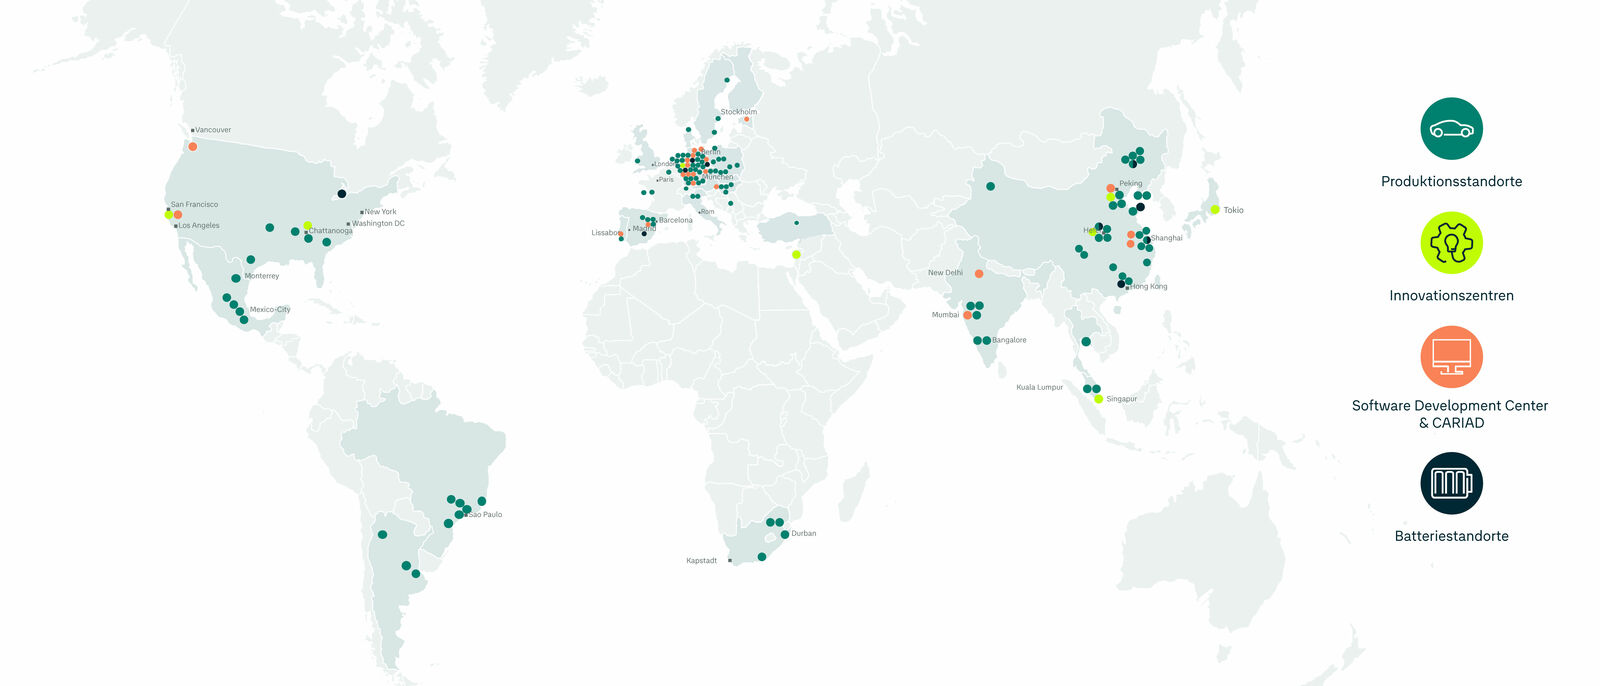 Eine Weltkarte, die verschiedene Standorte eines Unternehmens markiert